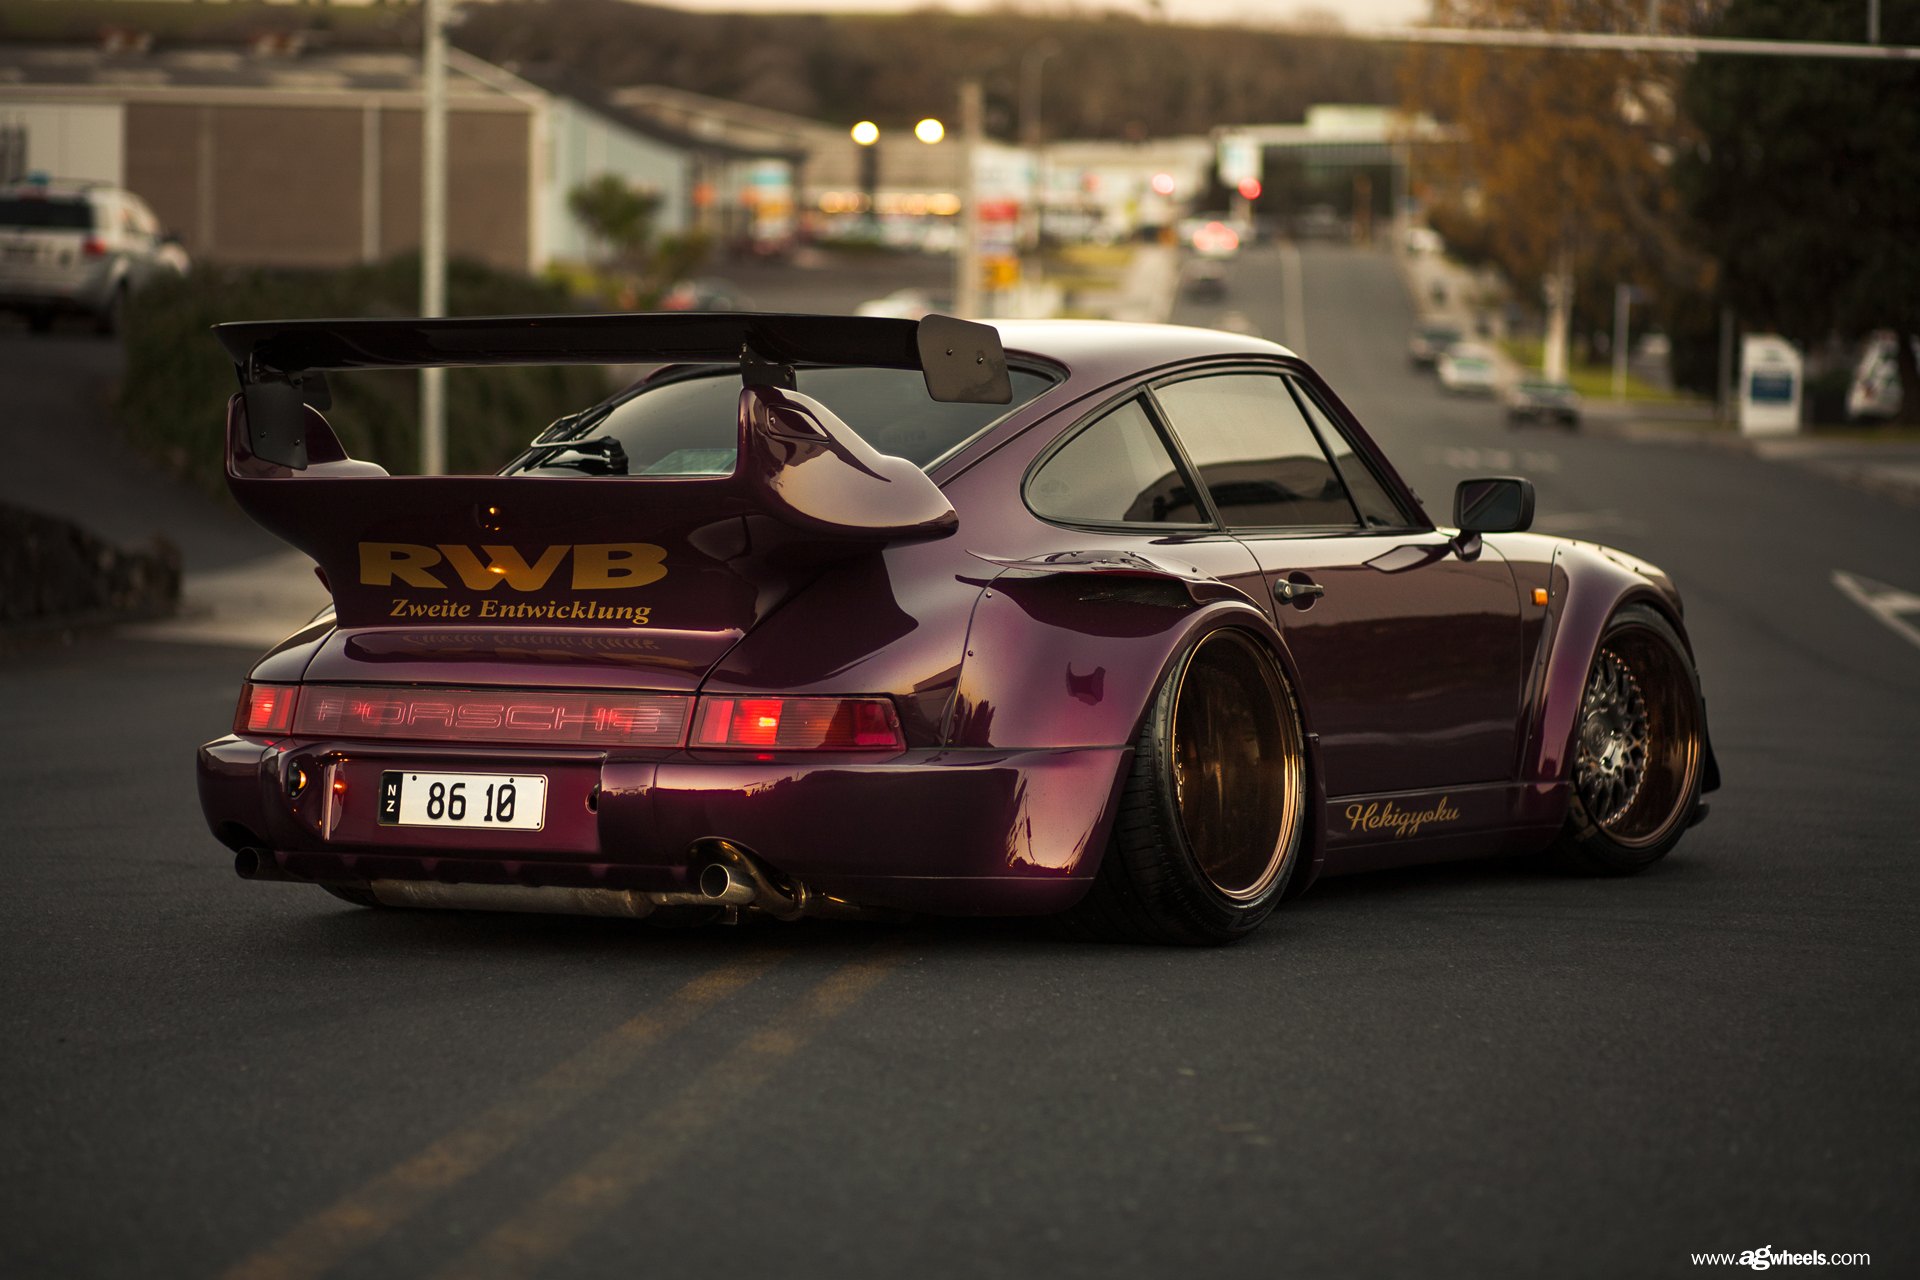 Large Wing Spoiler on Purple Porsche 911 - Photo by Avant Garde Wheels